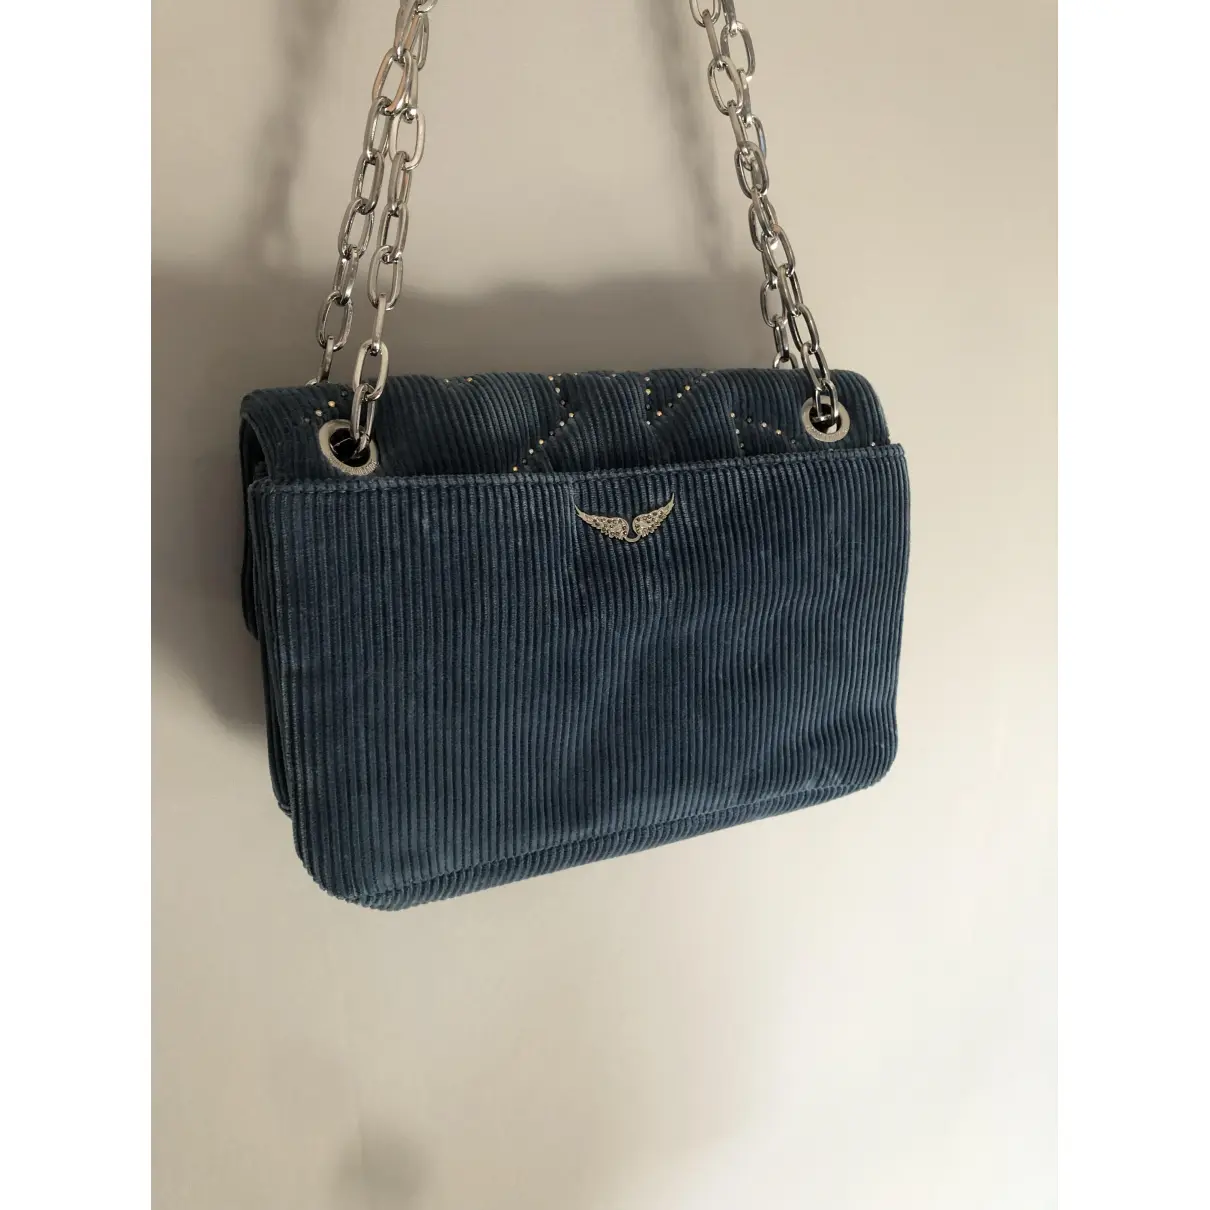 Buy Zadig & Voltaire Velvet handbag online